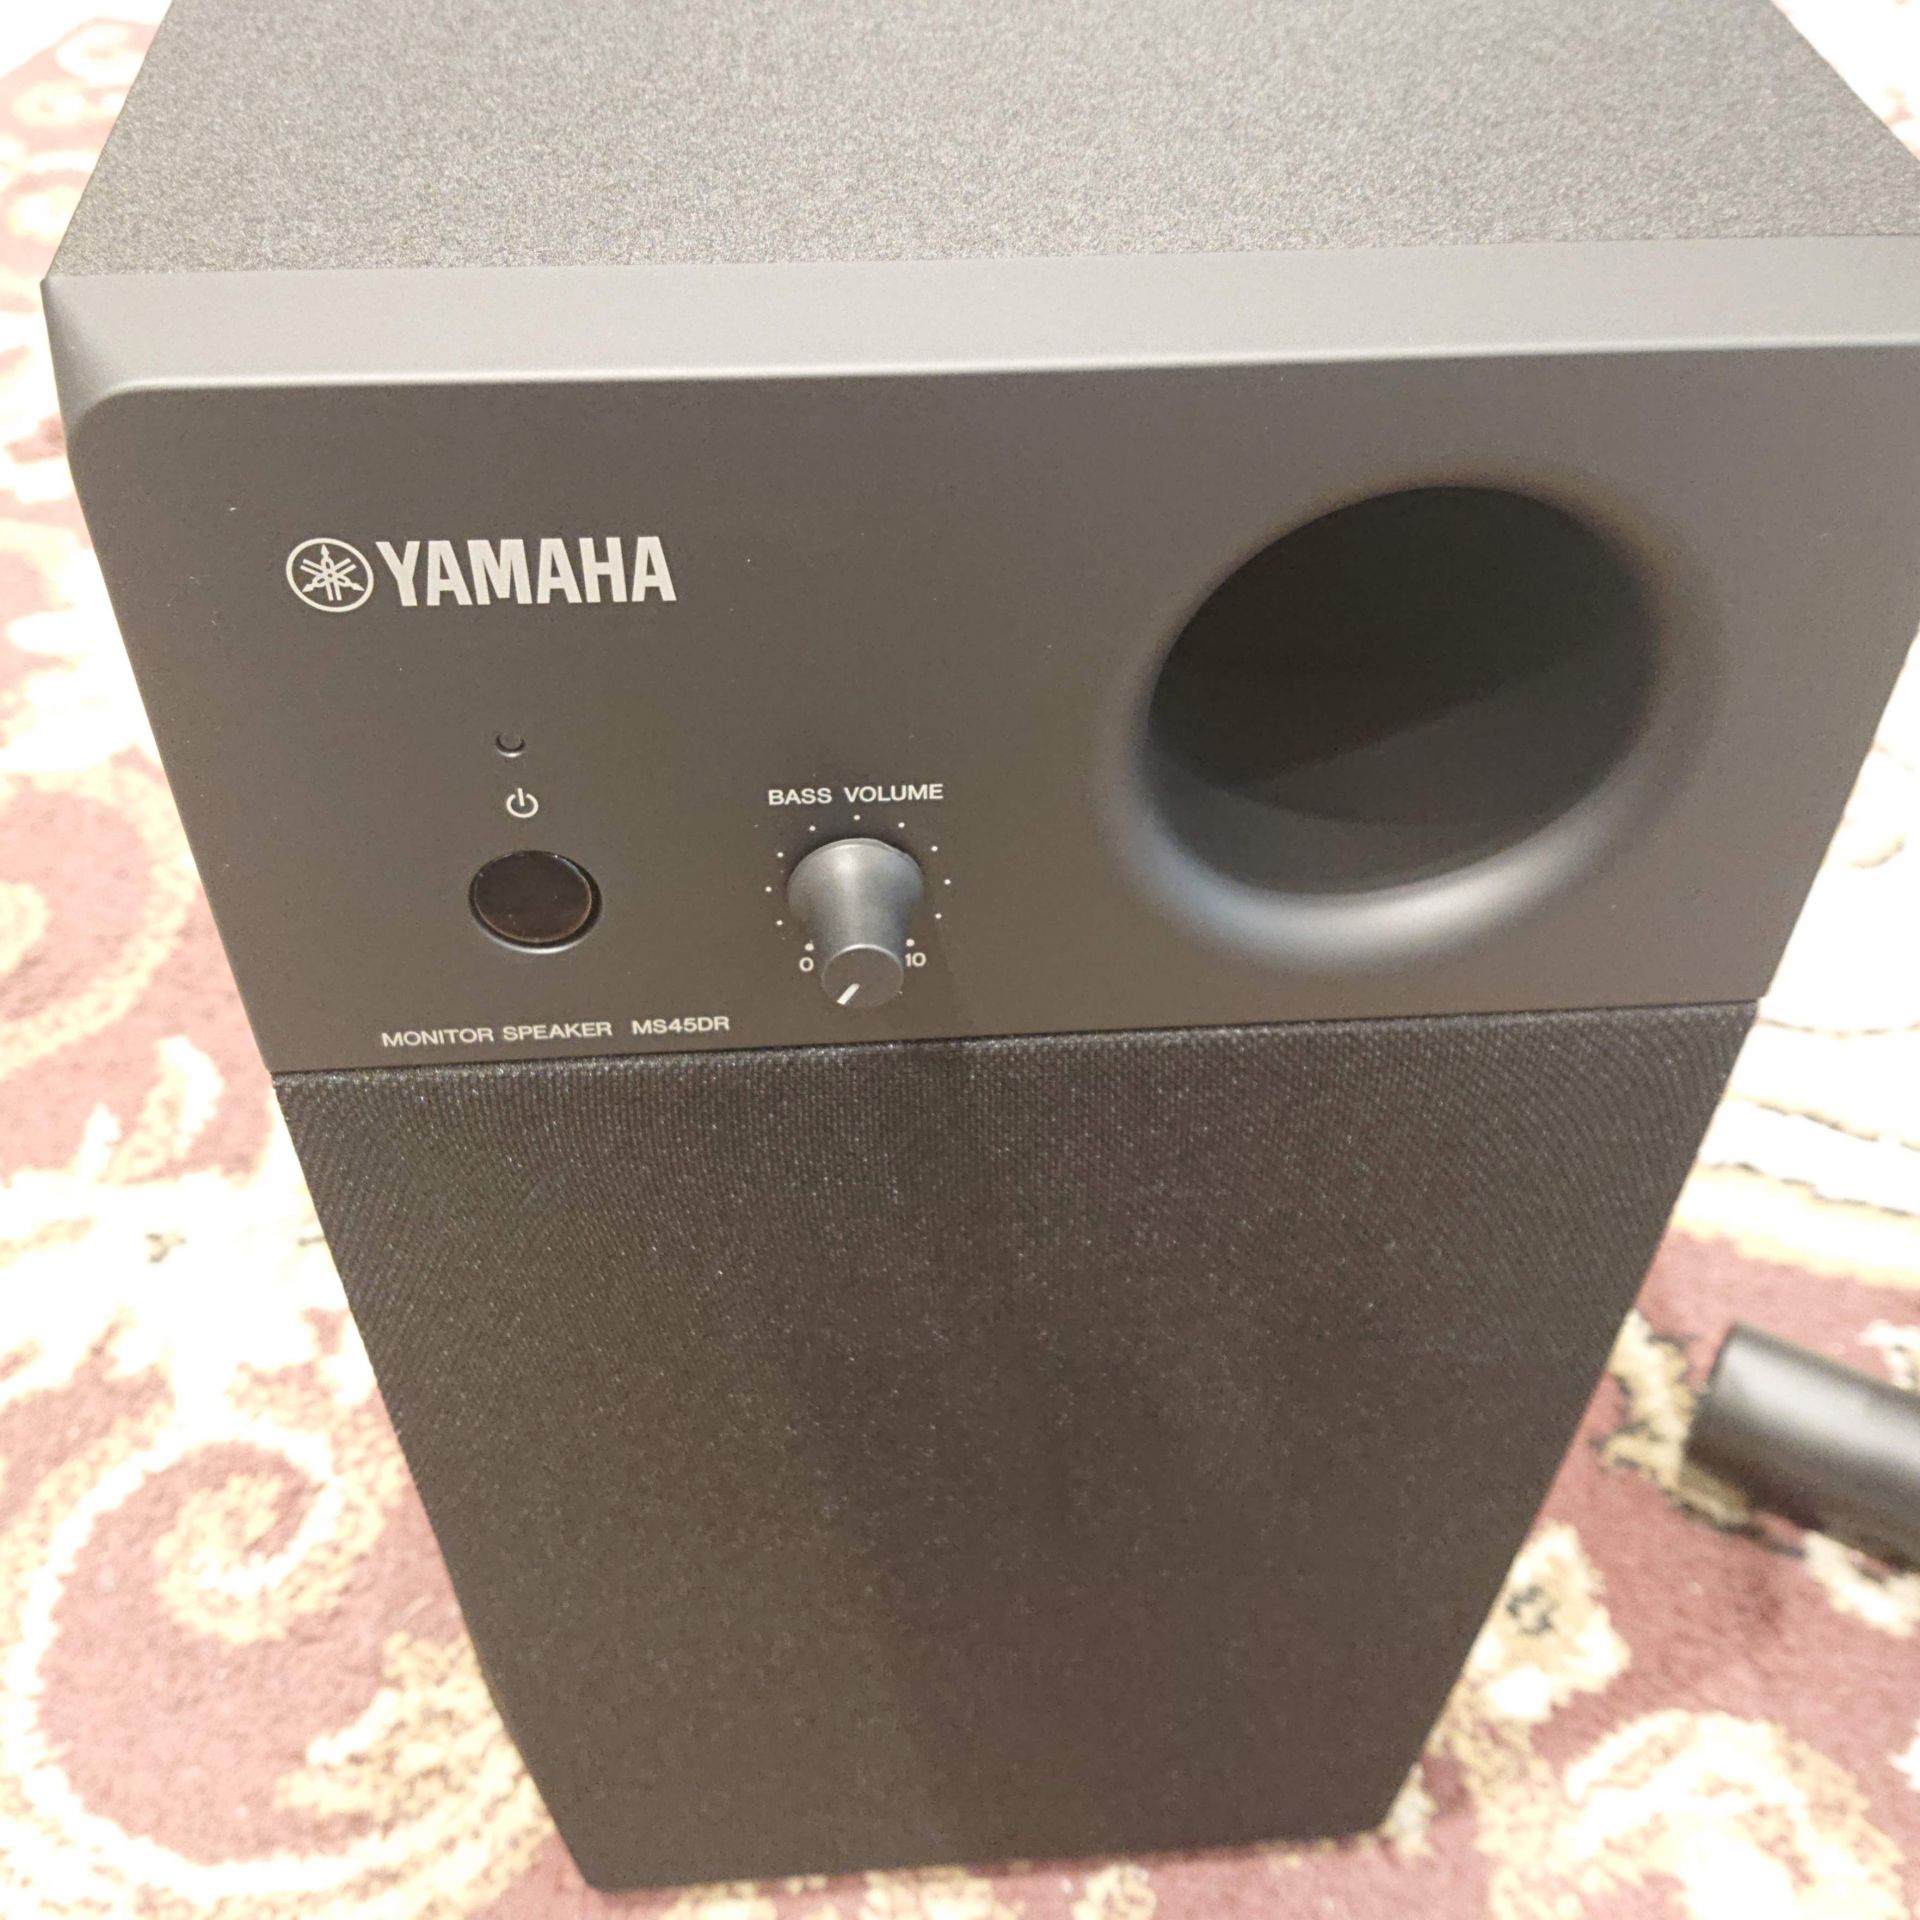 YAMAHA電子ドラム用2.1chモニタースピーカー【MS45DR】｜島村楽器 